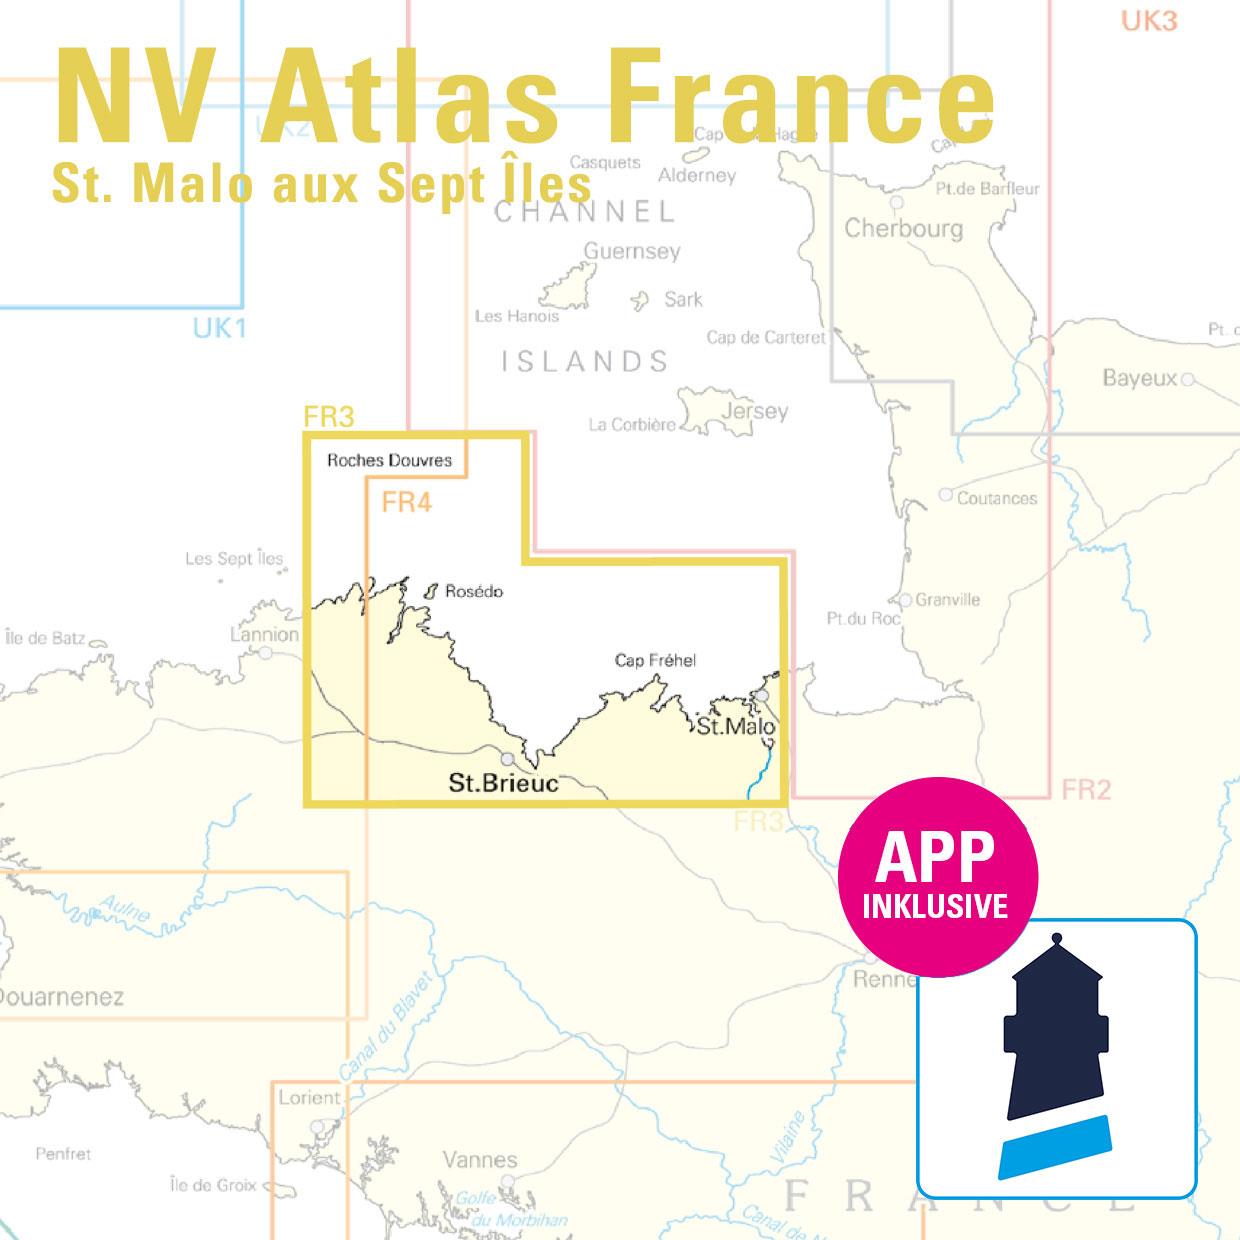 NV Atlas France FR3 - St. Malo aux Sept Îles